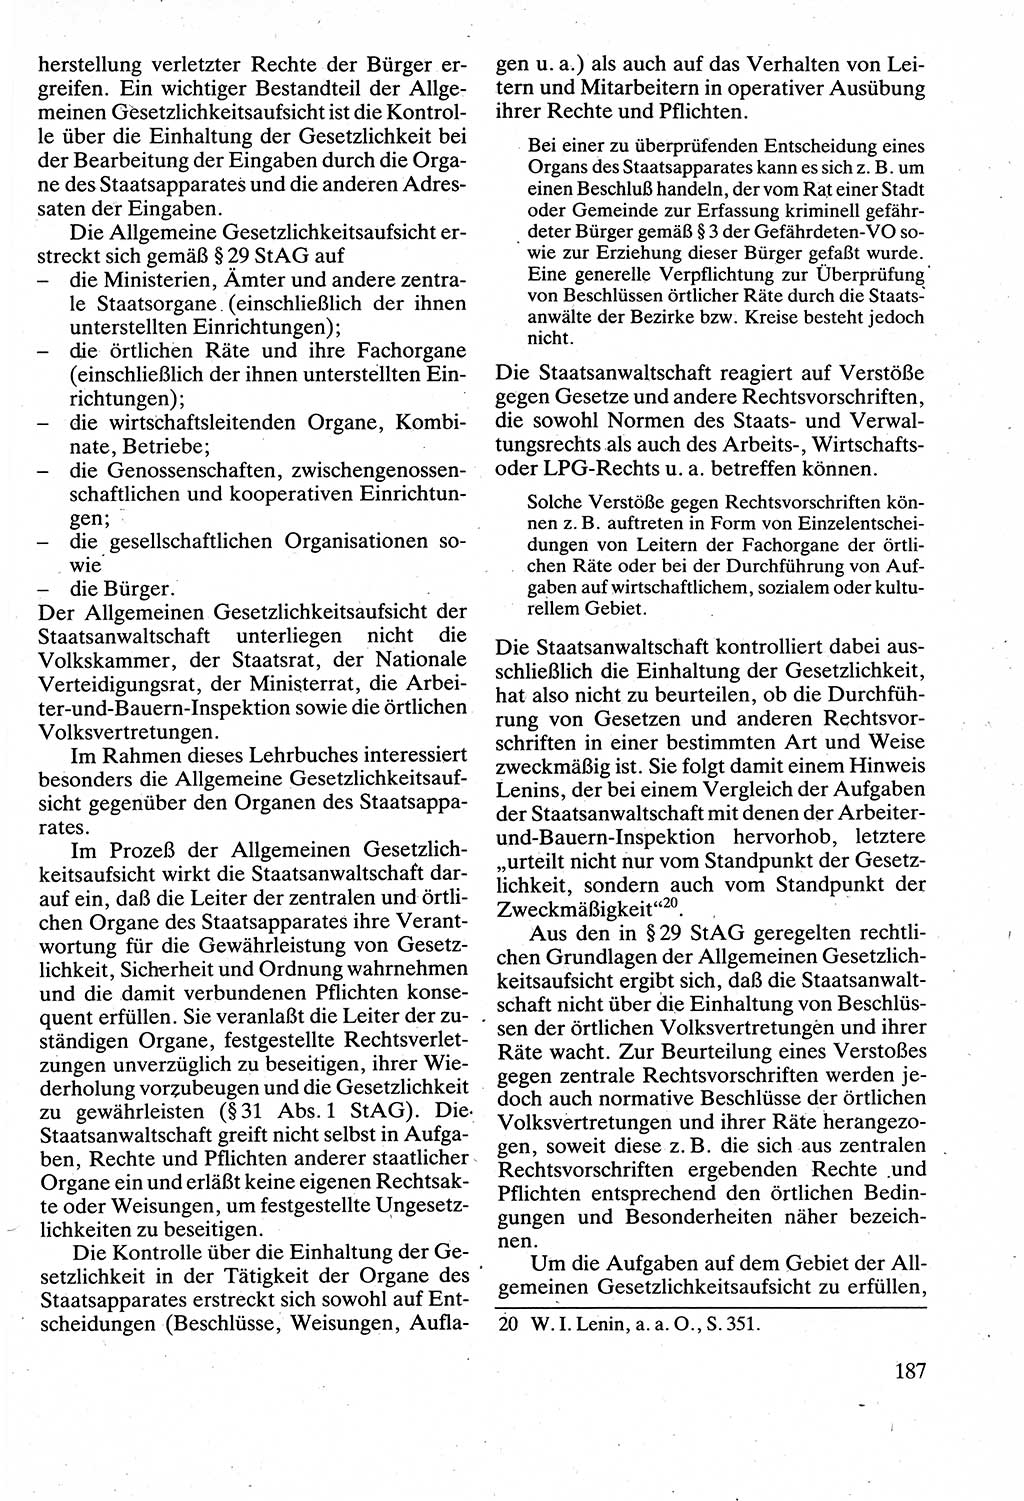 Verwaltungsrecht [Deutsche Demokratische Republik (DDR)], Lehrbuch 1988, Seite 187 (Verw.-R. DDR Lb. 1988, S. 187)